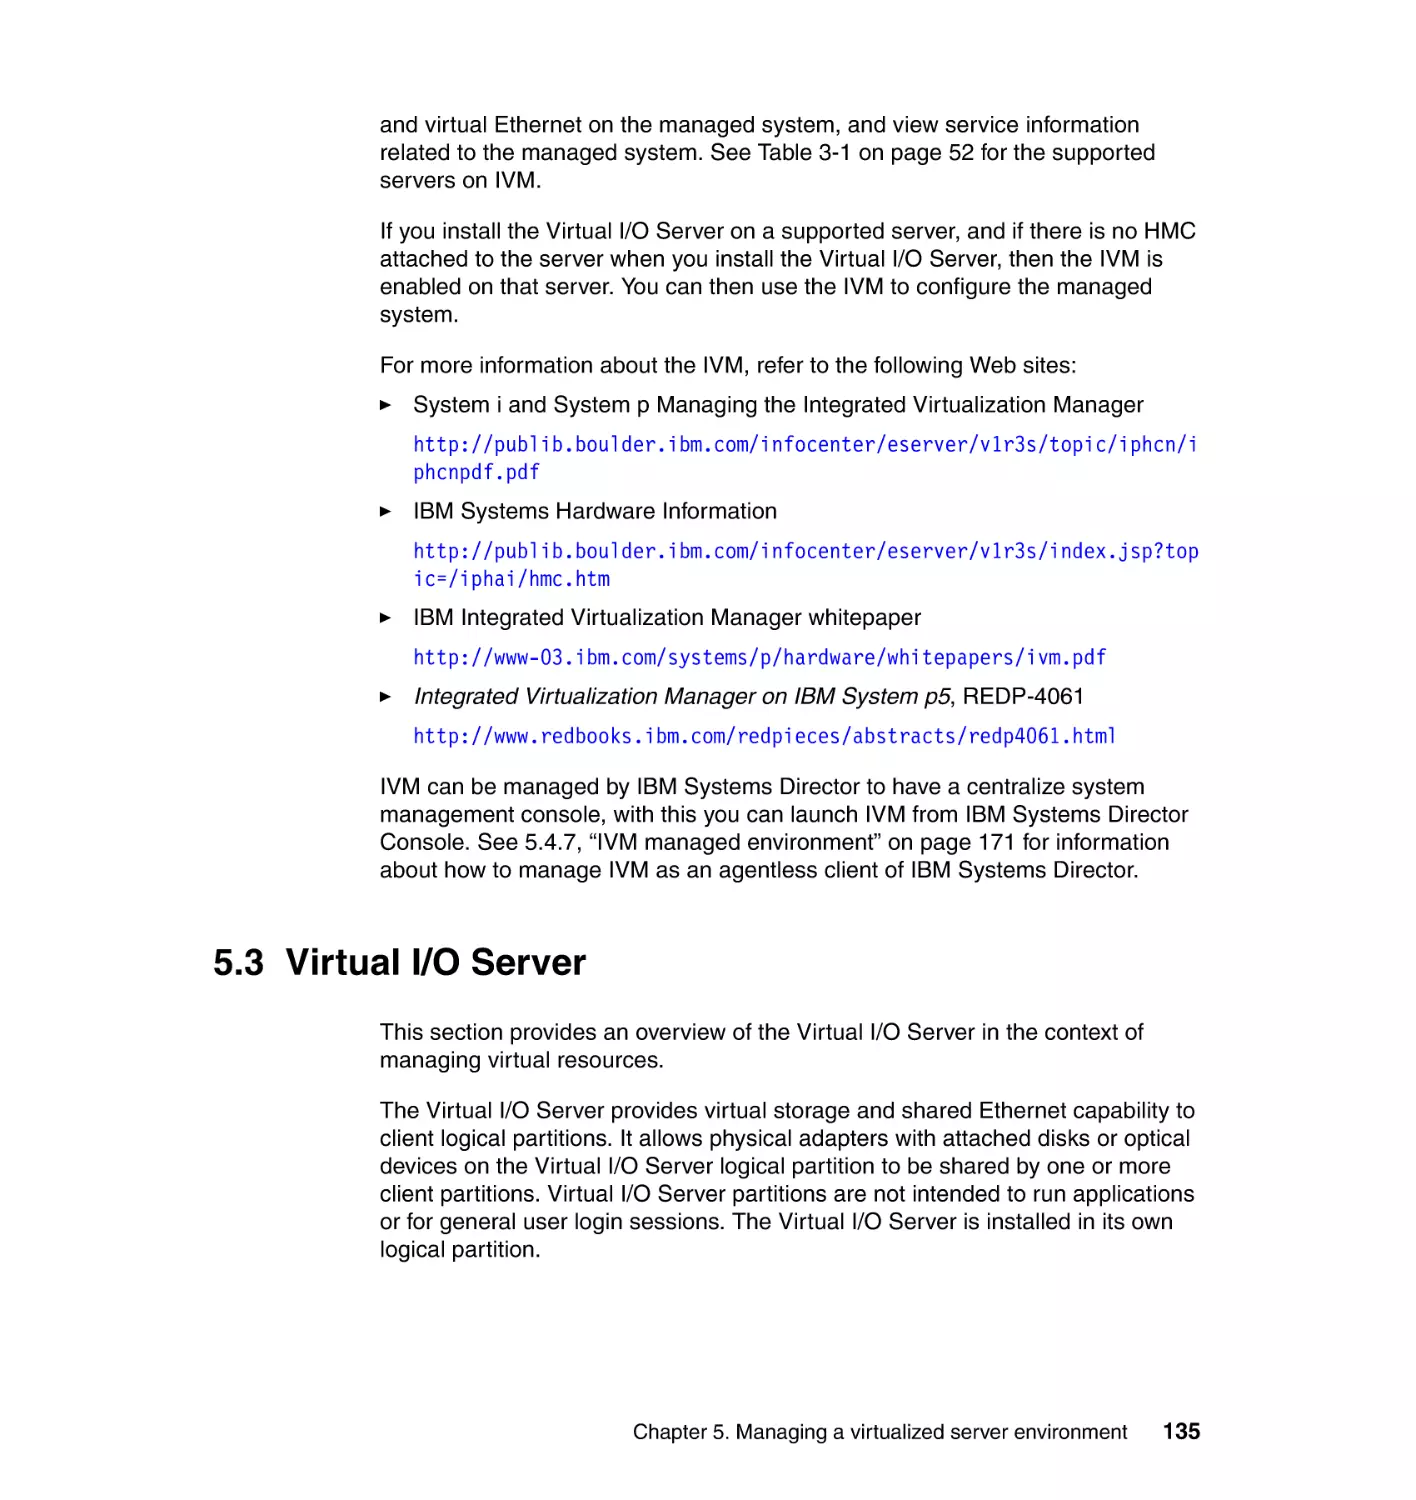 5.3 Virtual I/O Server